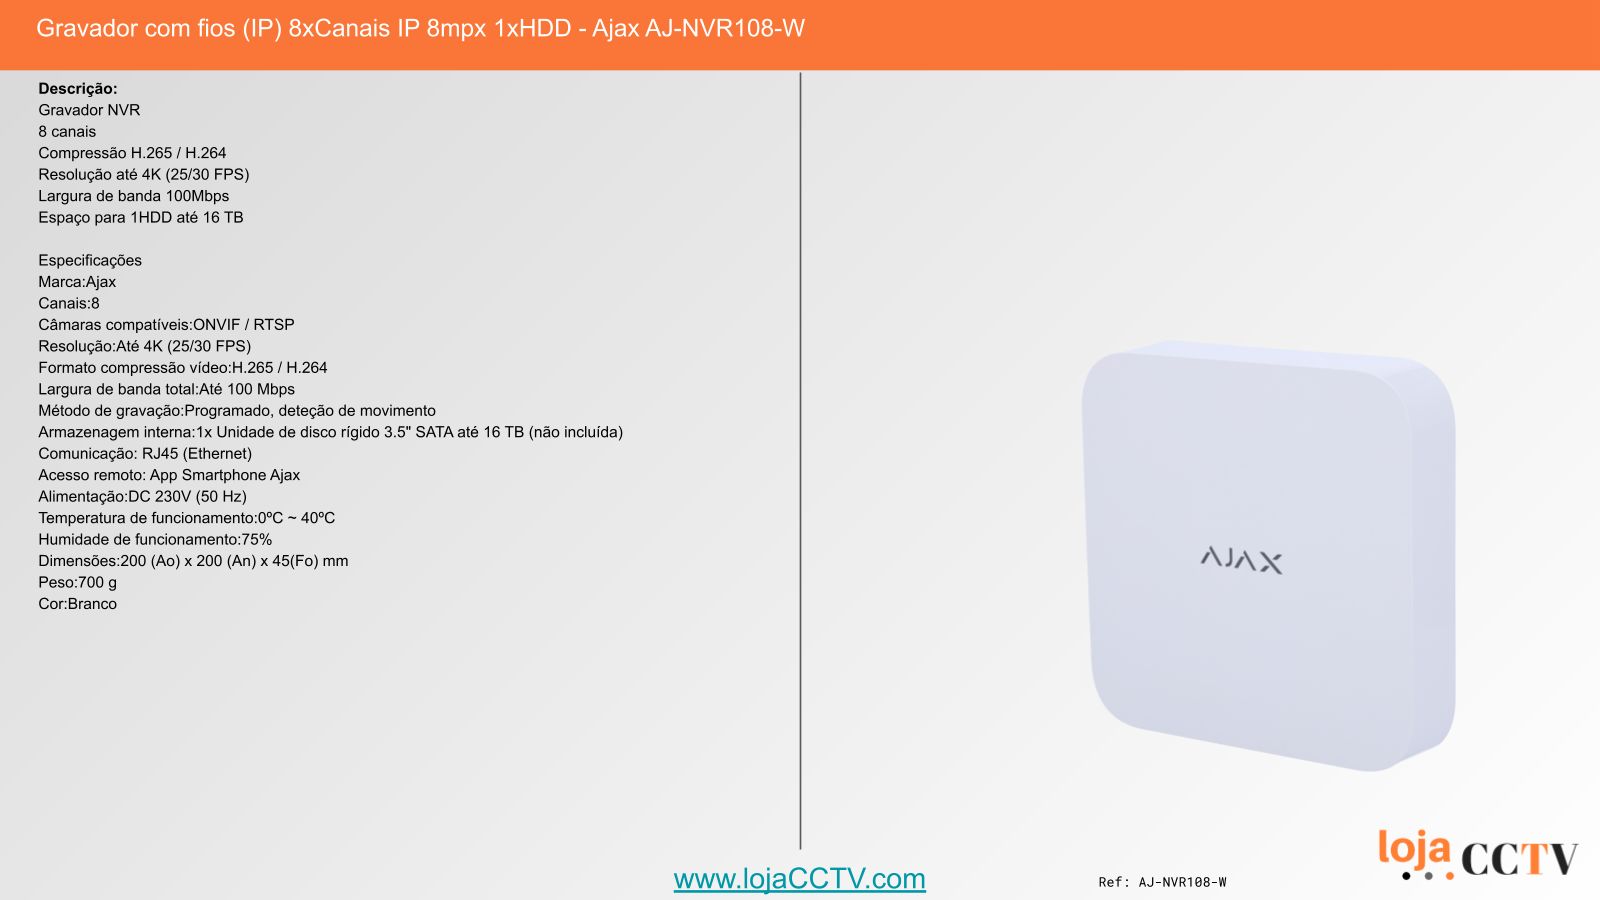 Videovigilância com fios (IP) e Switch PoE 8 Câmaras Dome 2 mpx, Ajax